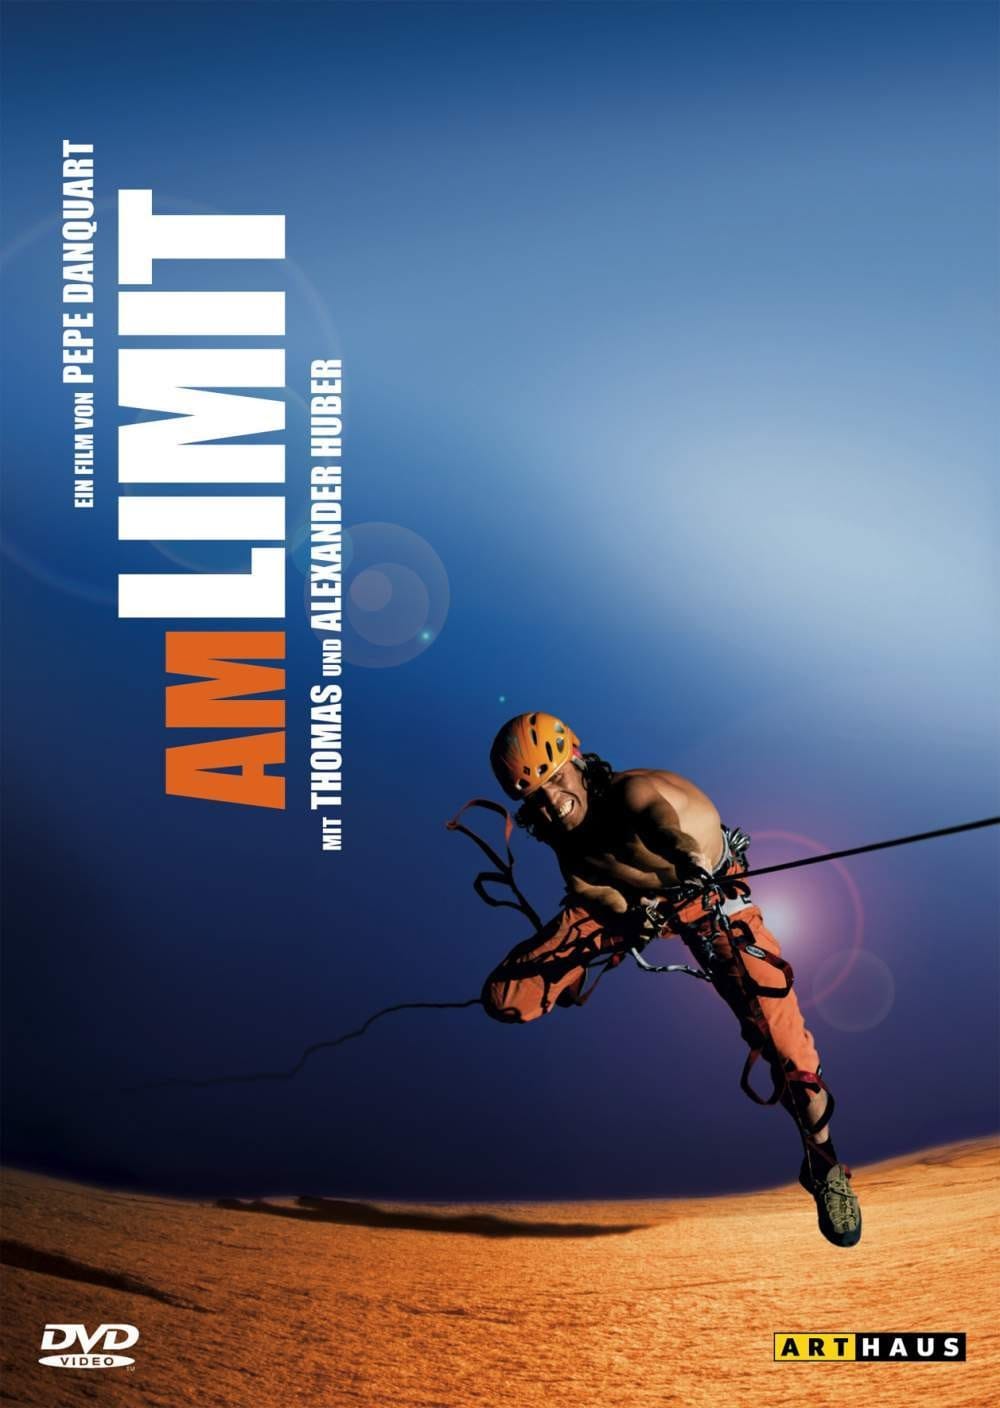 Plakat von "Am Limit"